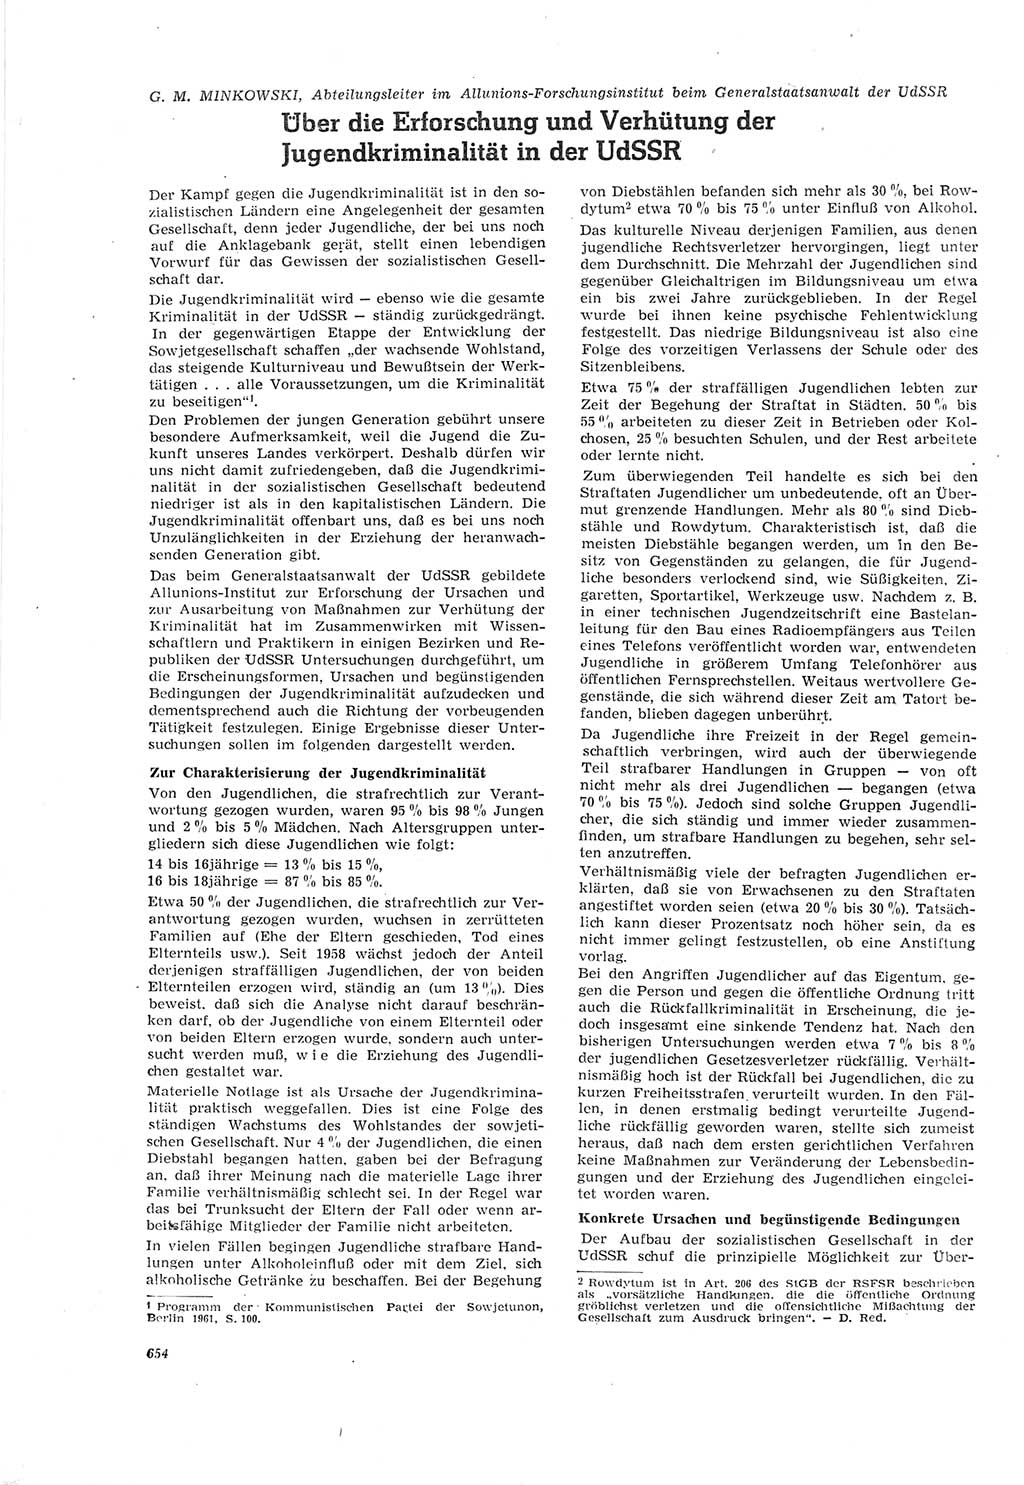 Neue Justiz (NJ), Zeitschrift für Recht und Rechtswissenschaft [Deutsche Demokratische Republik (DDR)], 18. Jahrgang 1964, Seite 654 (NJ DDR 1964, S. 654)